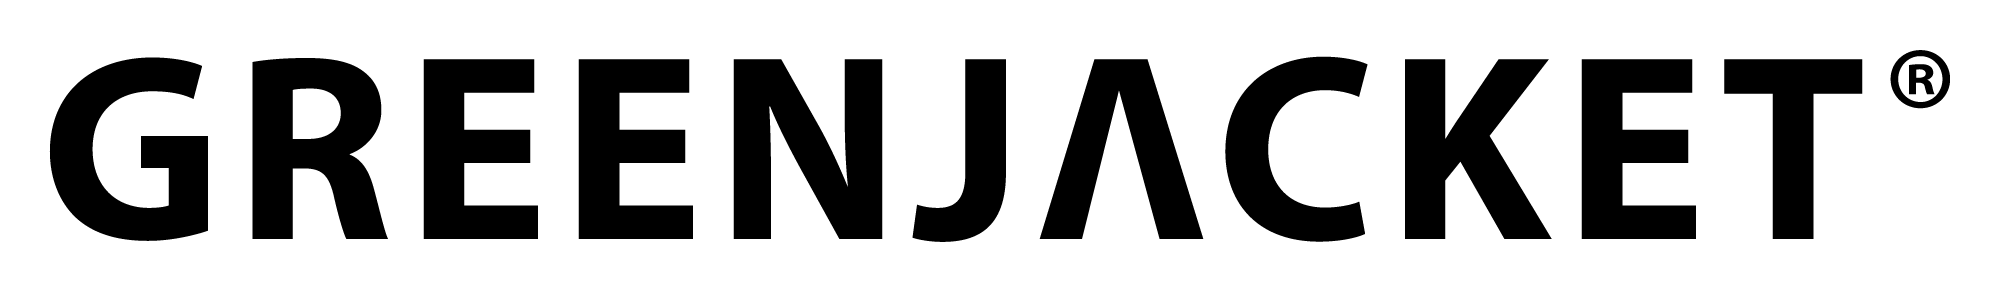 Greenjacket Logo